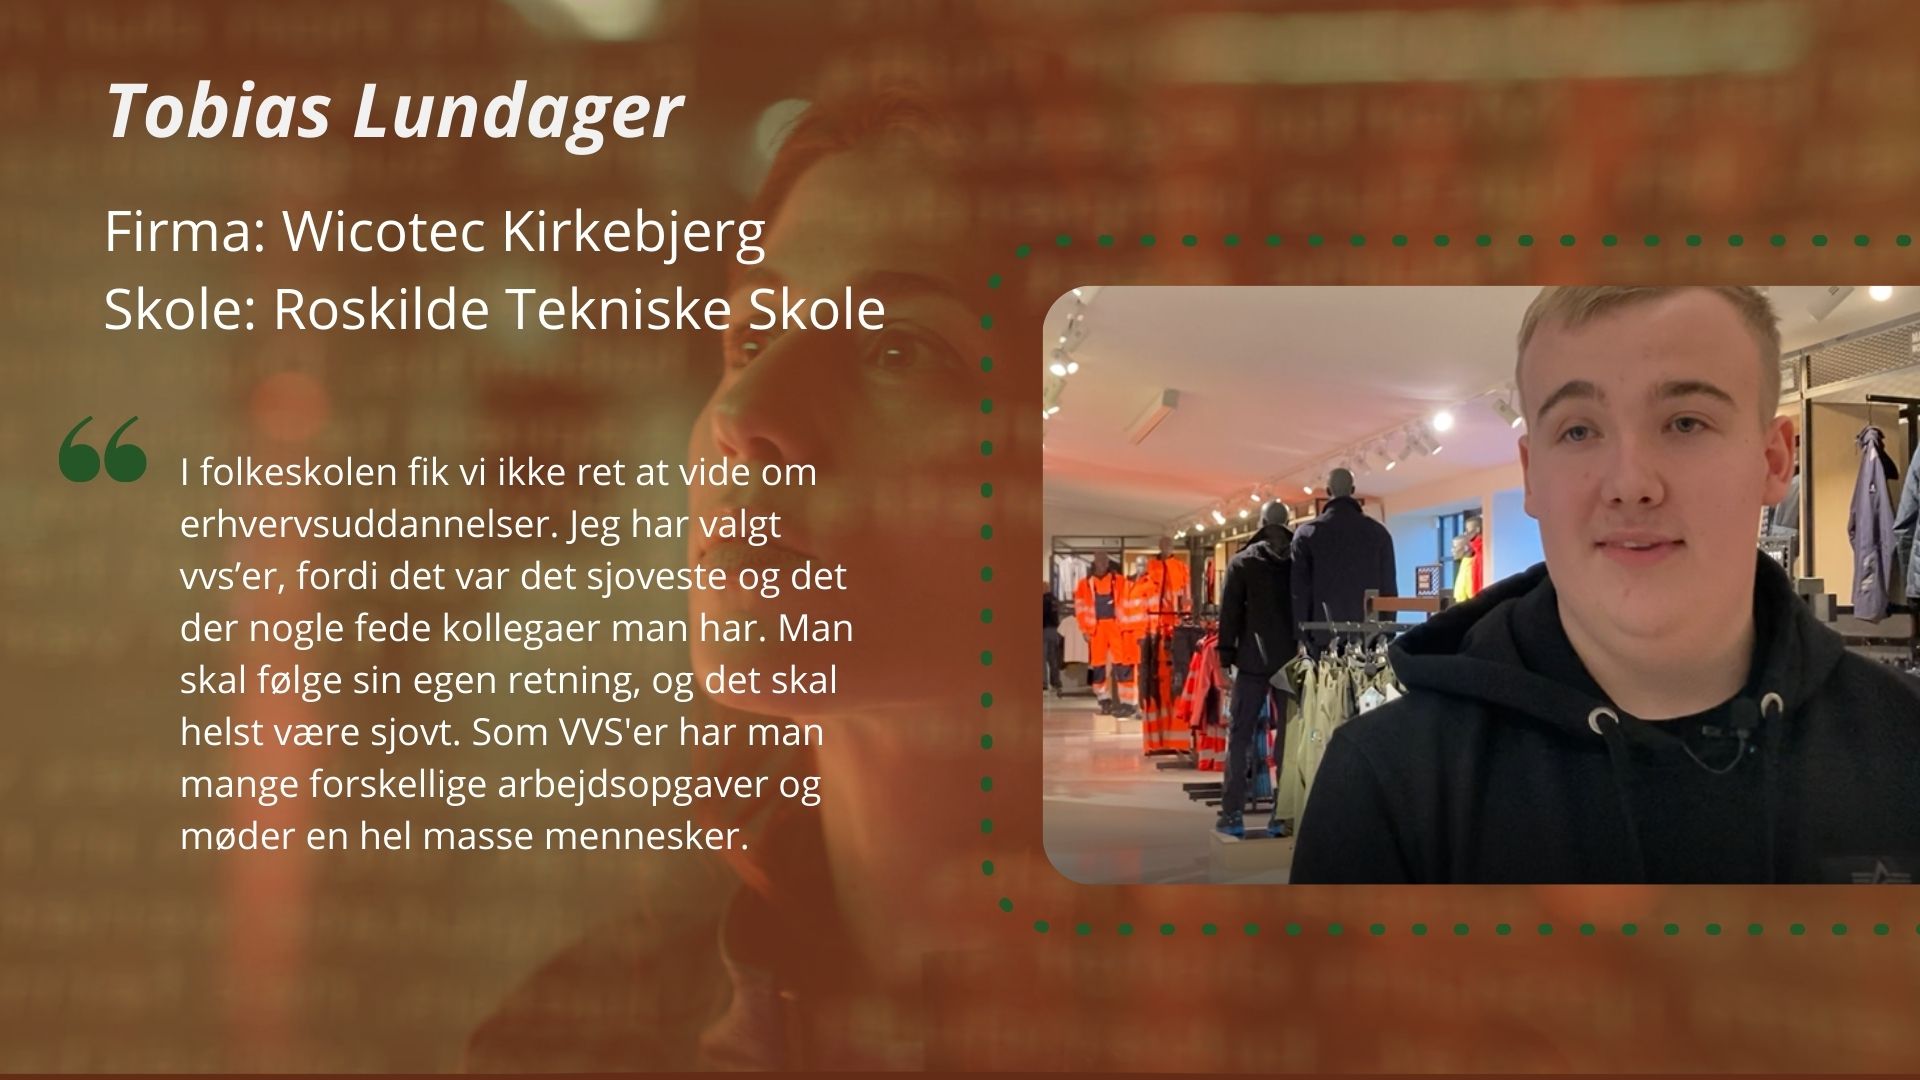 Præsentation af Tobias Lundager, deltager i DM i Skills for vvs-energiuddannelsen